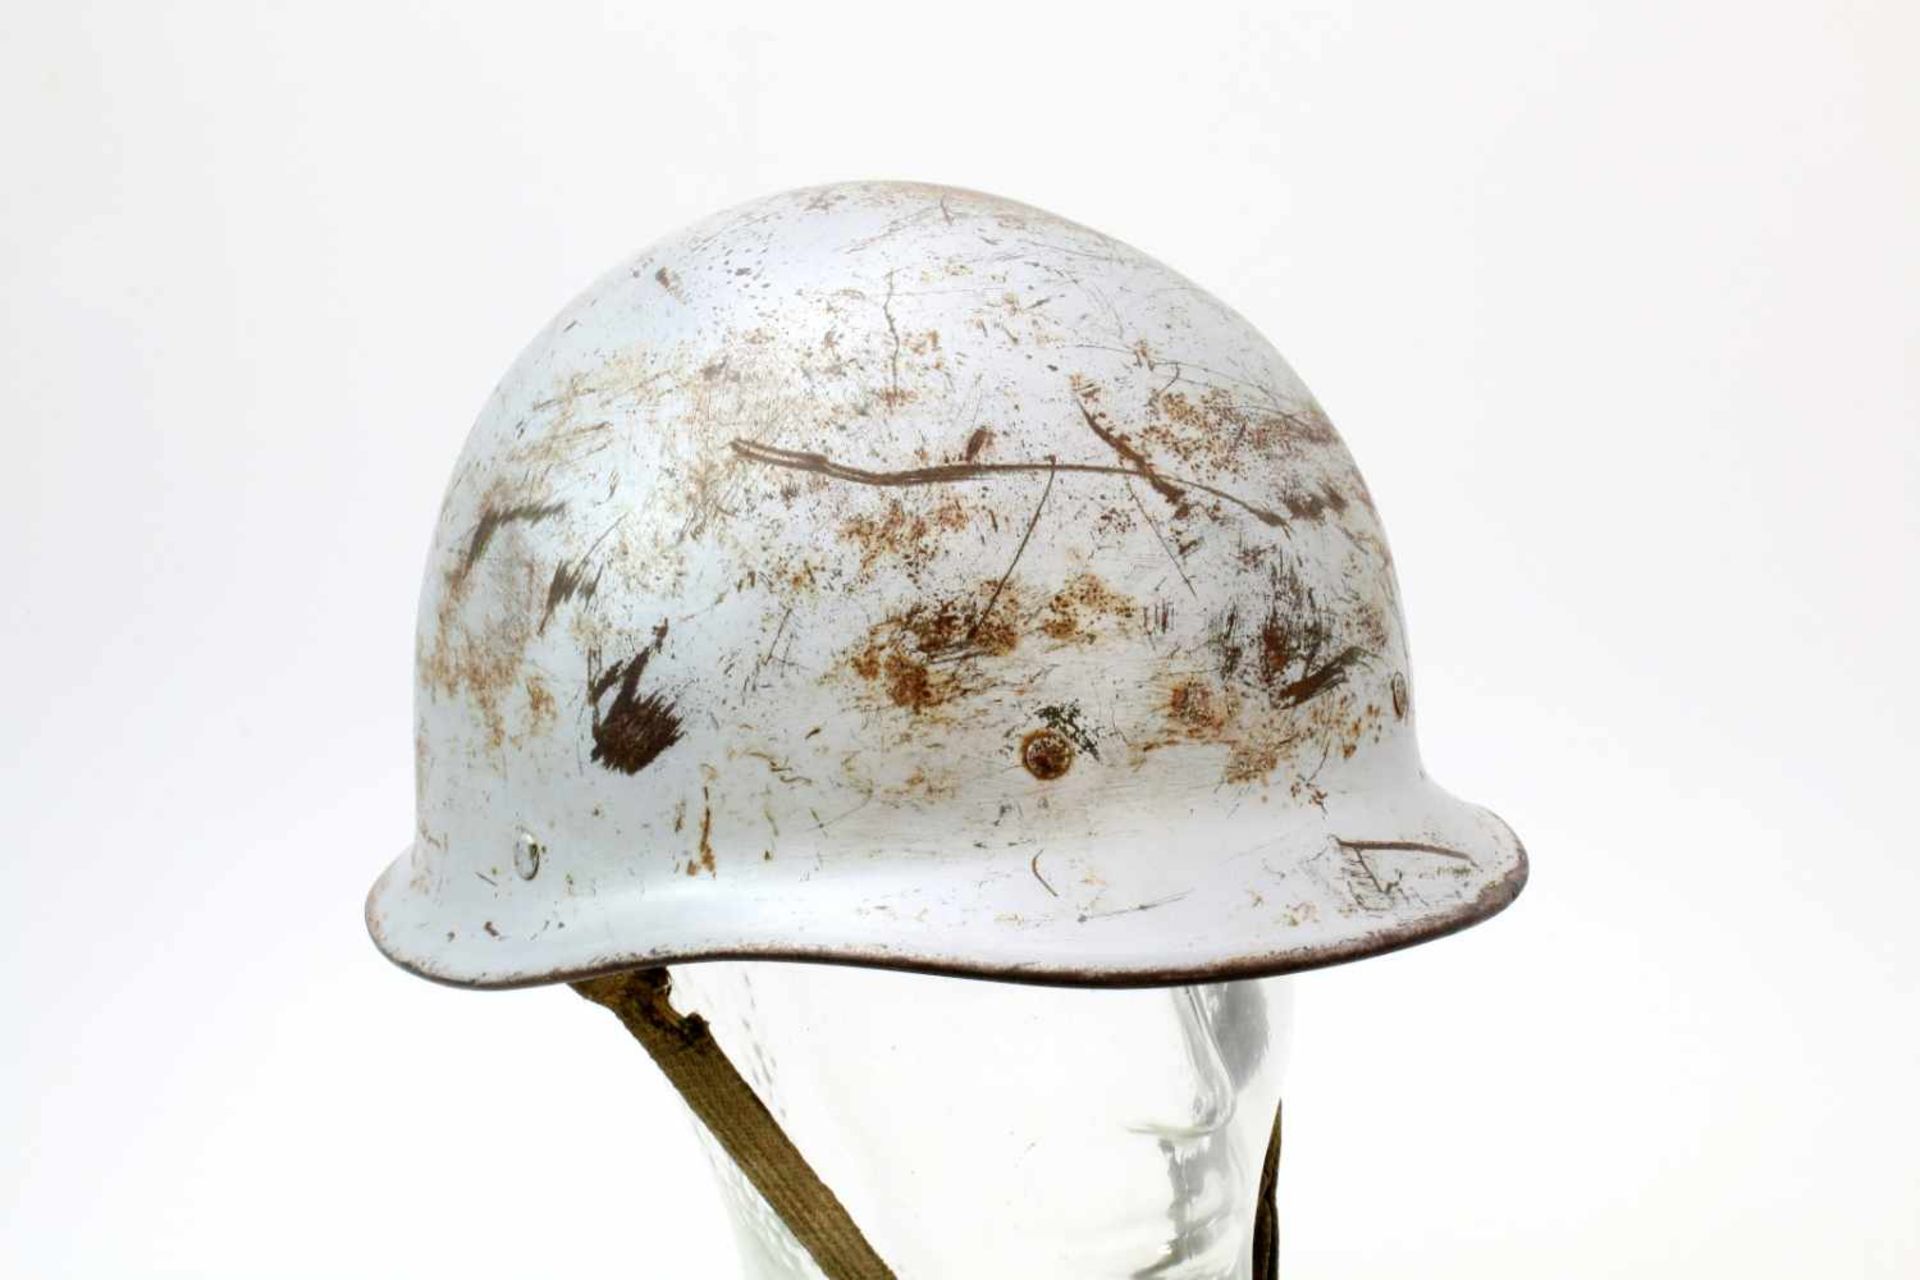 USA - Modifizierter Stahlhelm M1 Der Helm entgegen der U.S.-Version mit Lederinnenausstattung